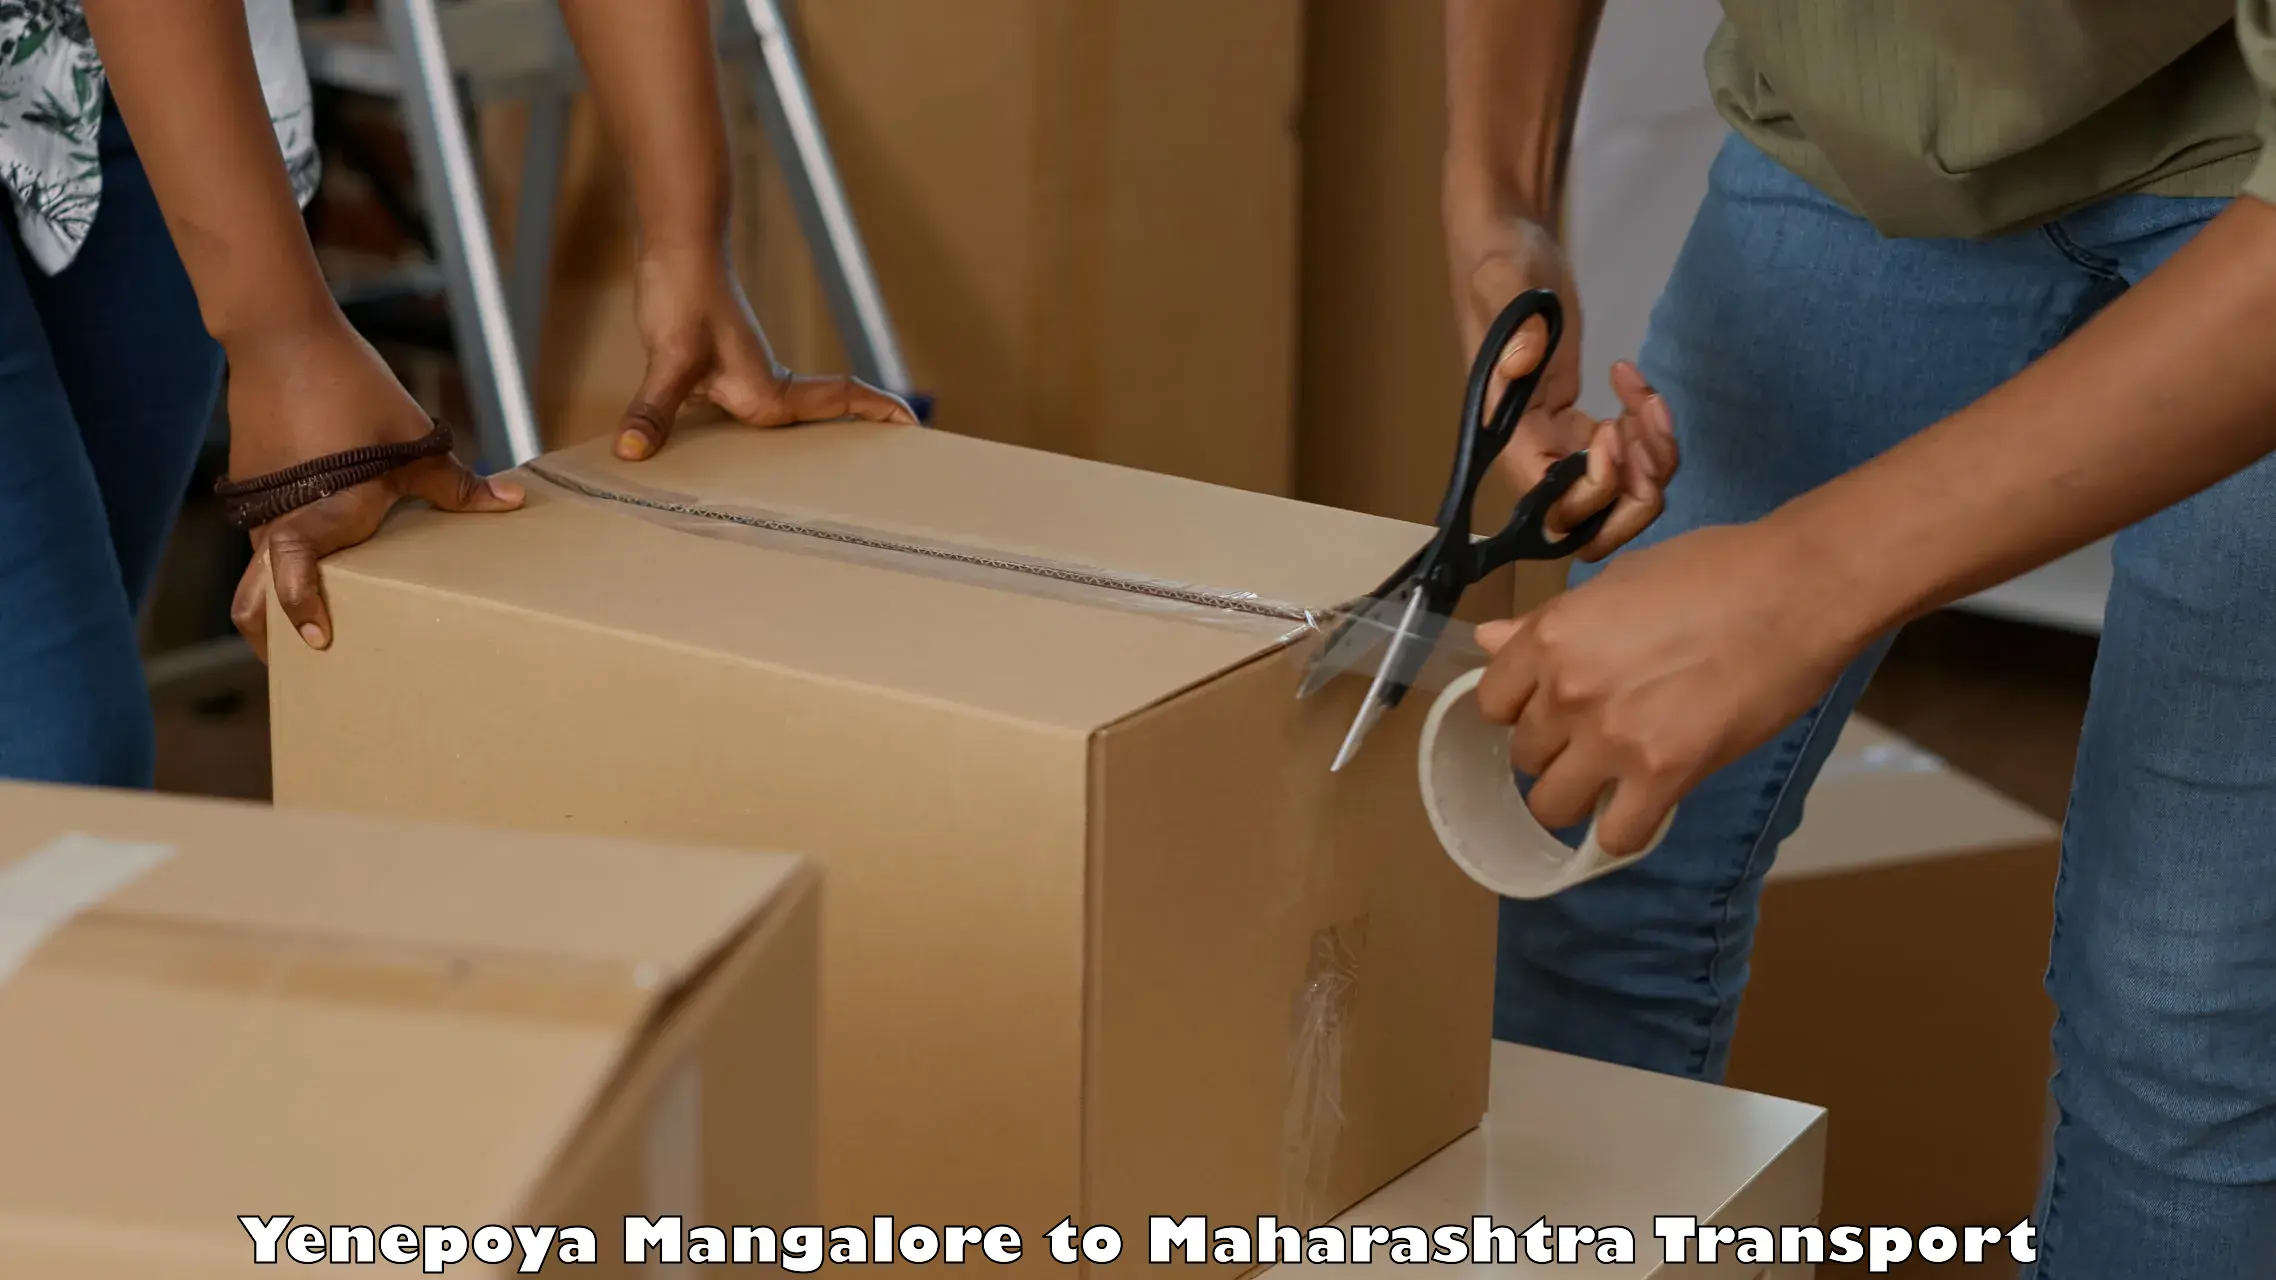 Daily transport service Yenepoya Mangalore to Maharashtra